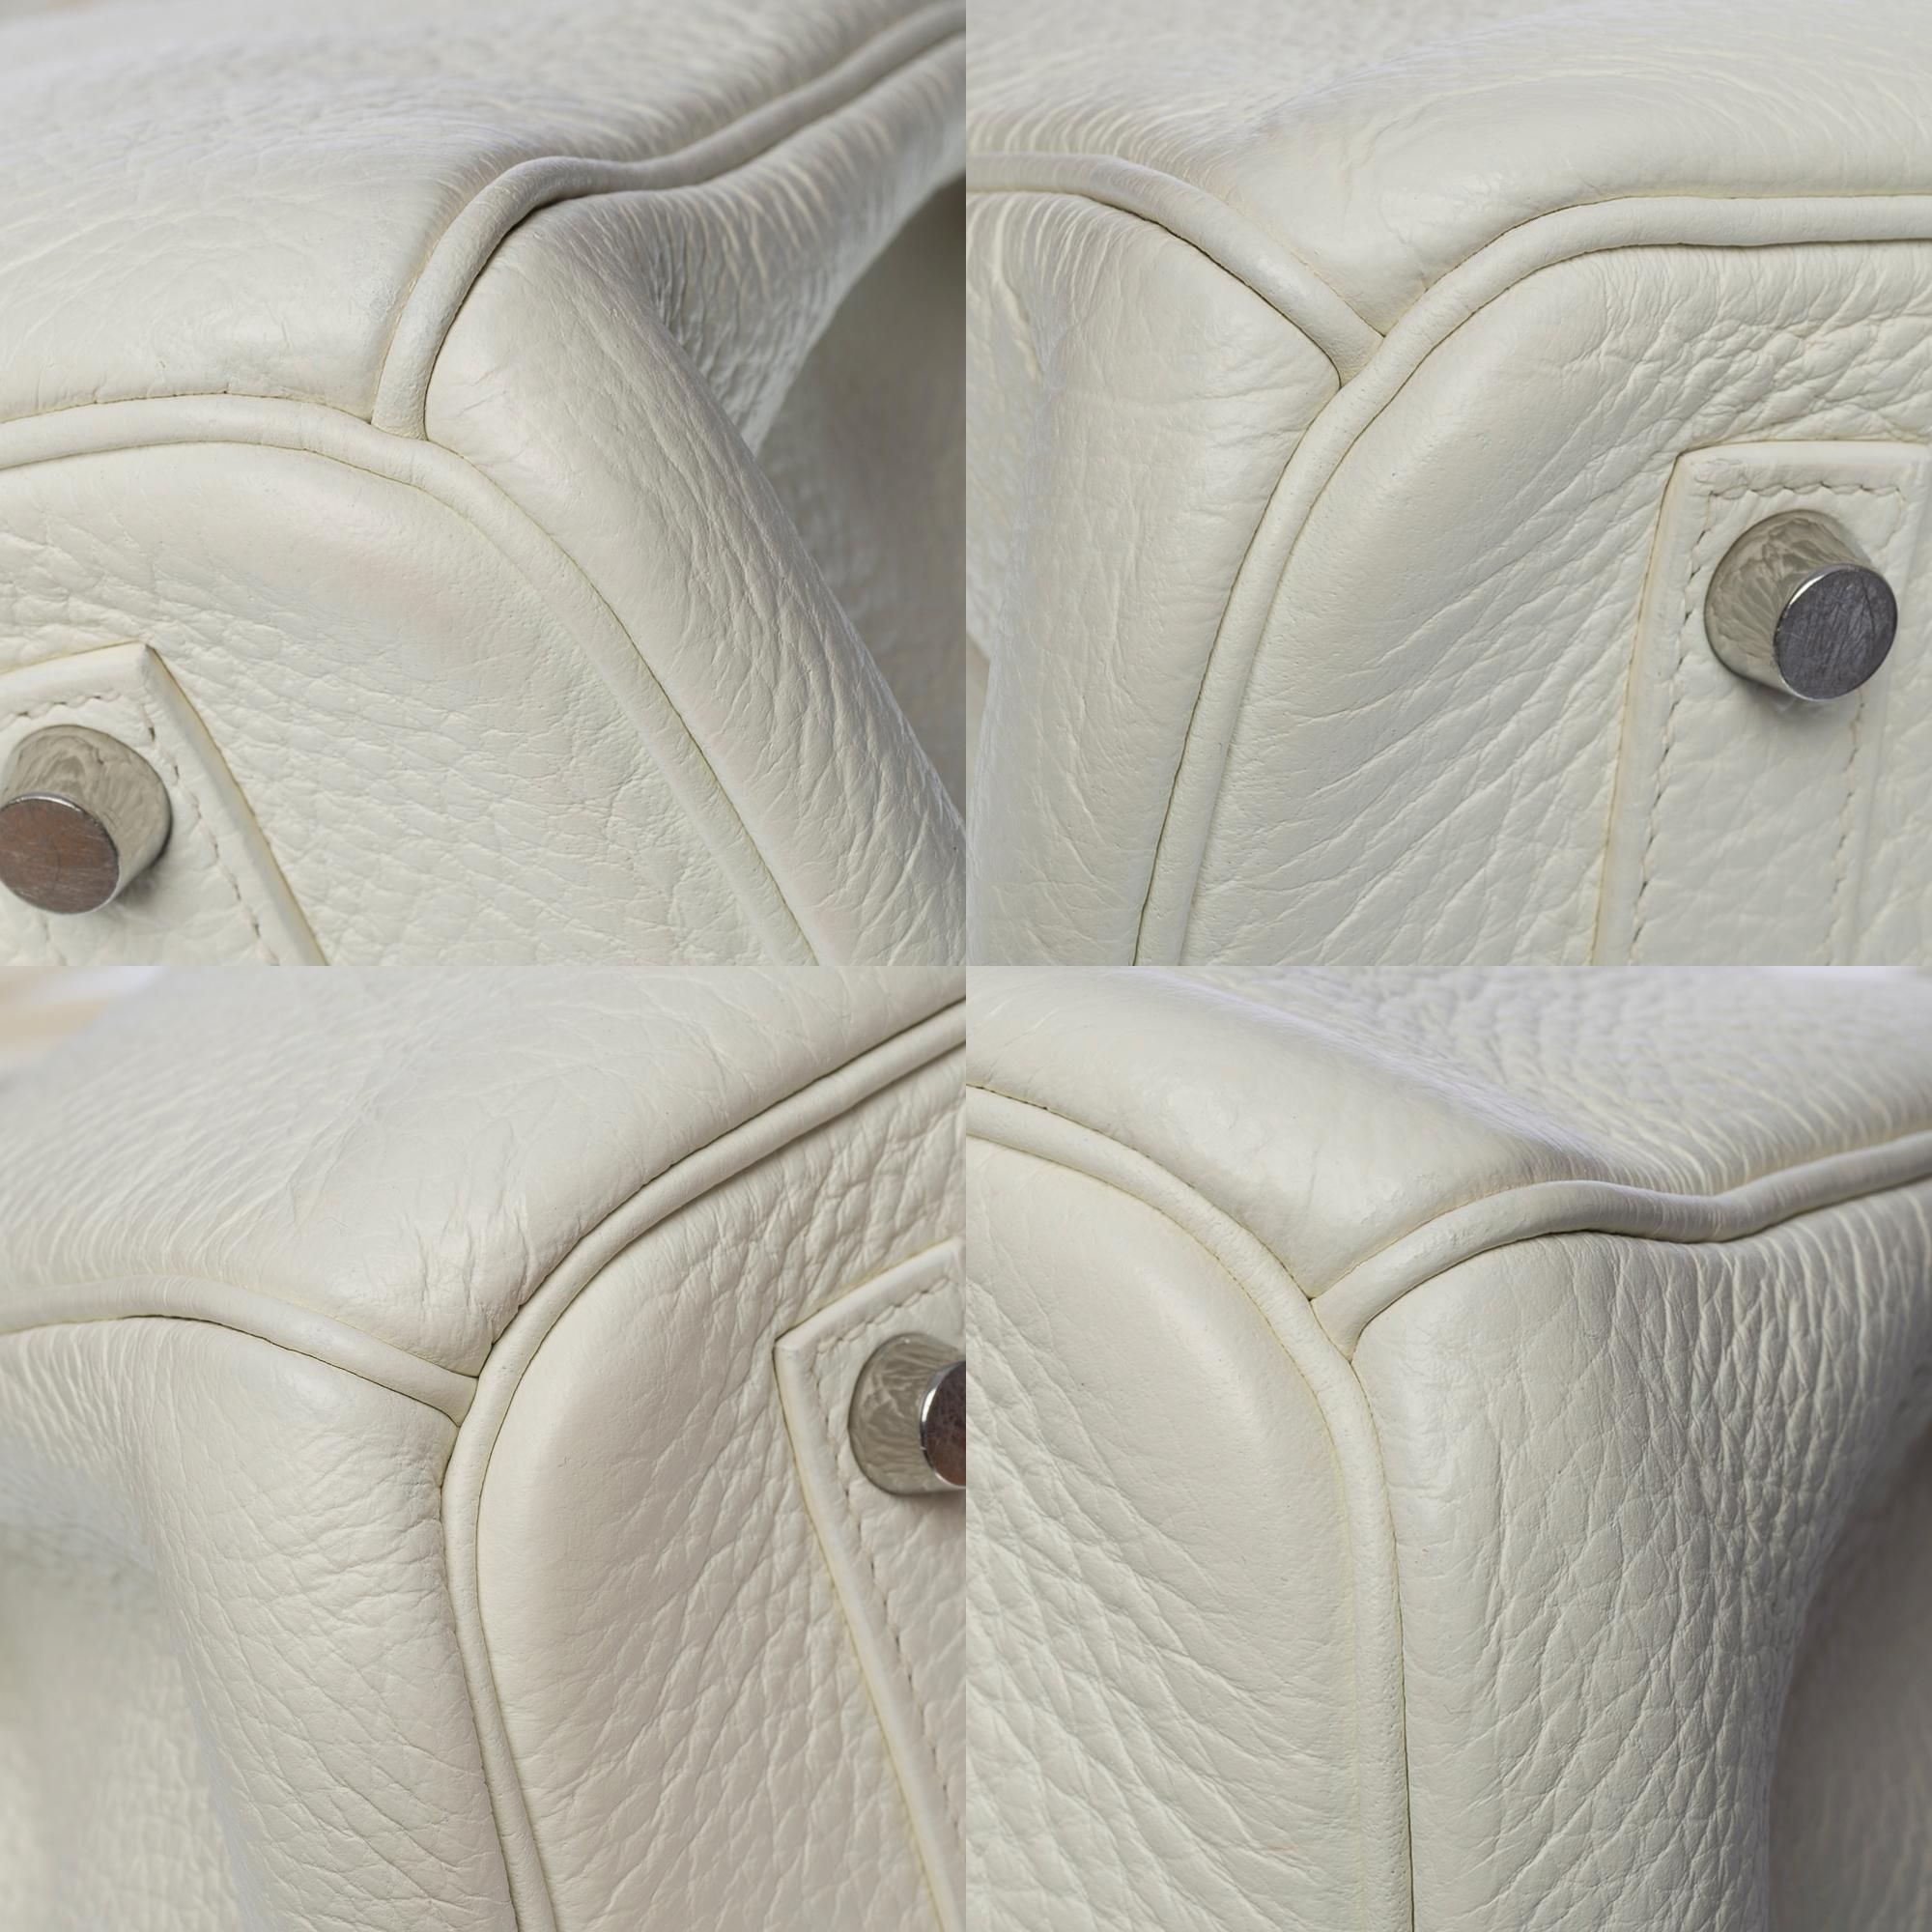 Stunning Hermès Birkin 35 handbag in white Togo leather, SHW 7